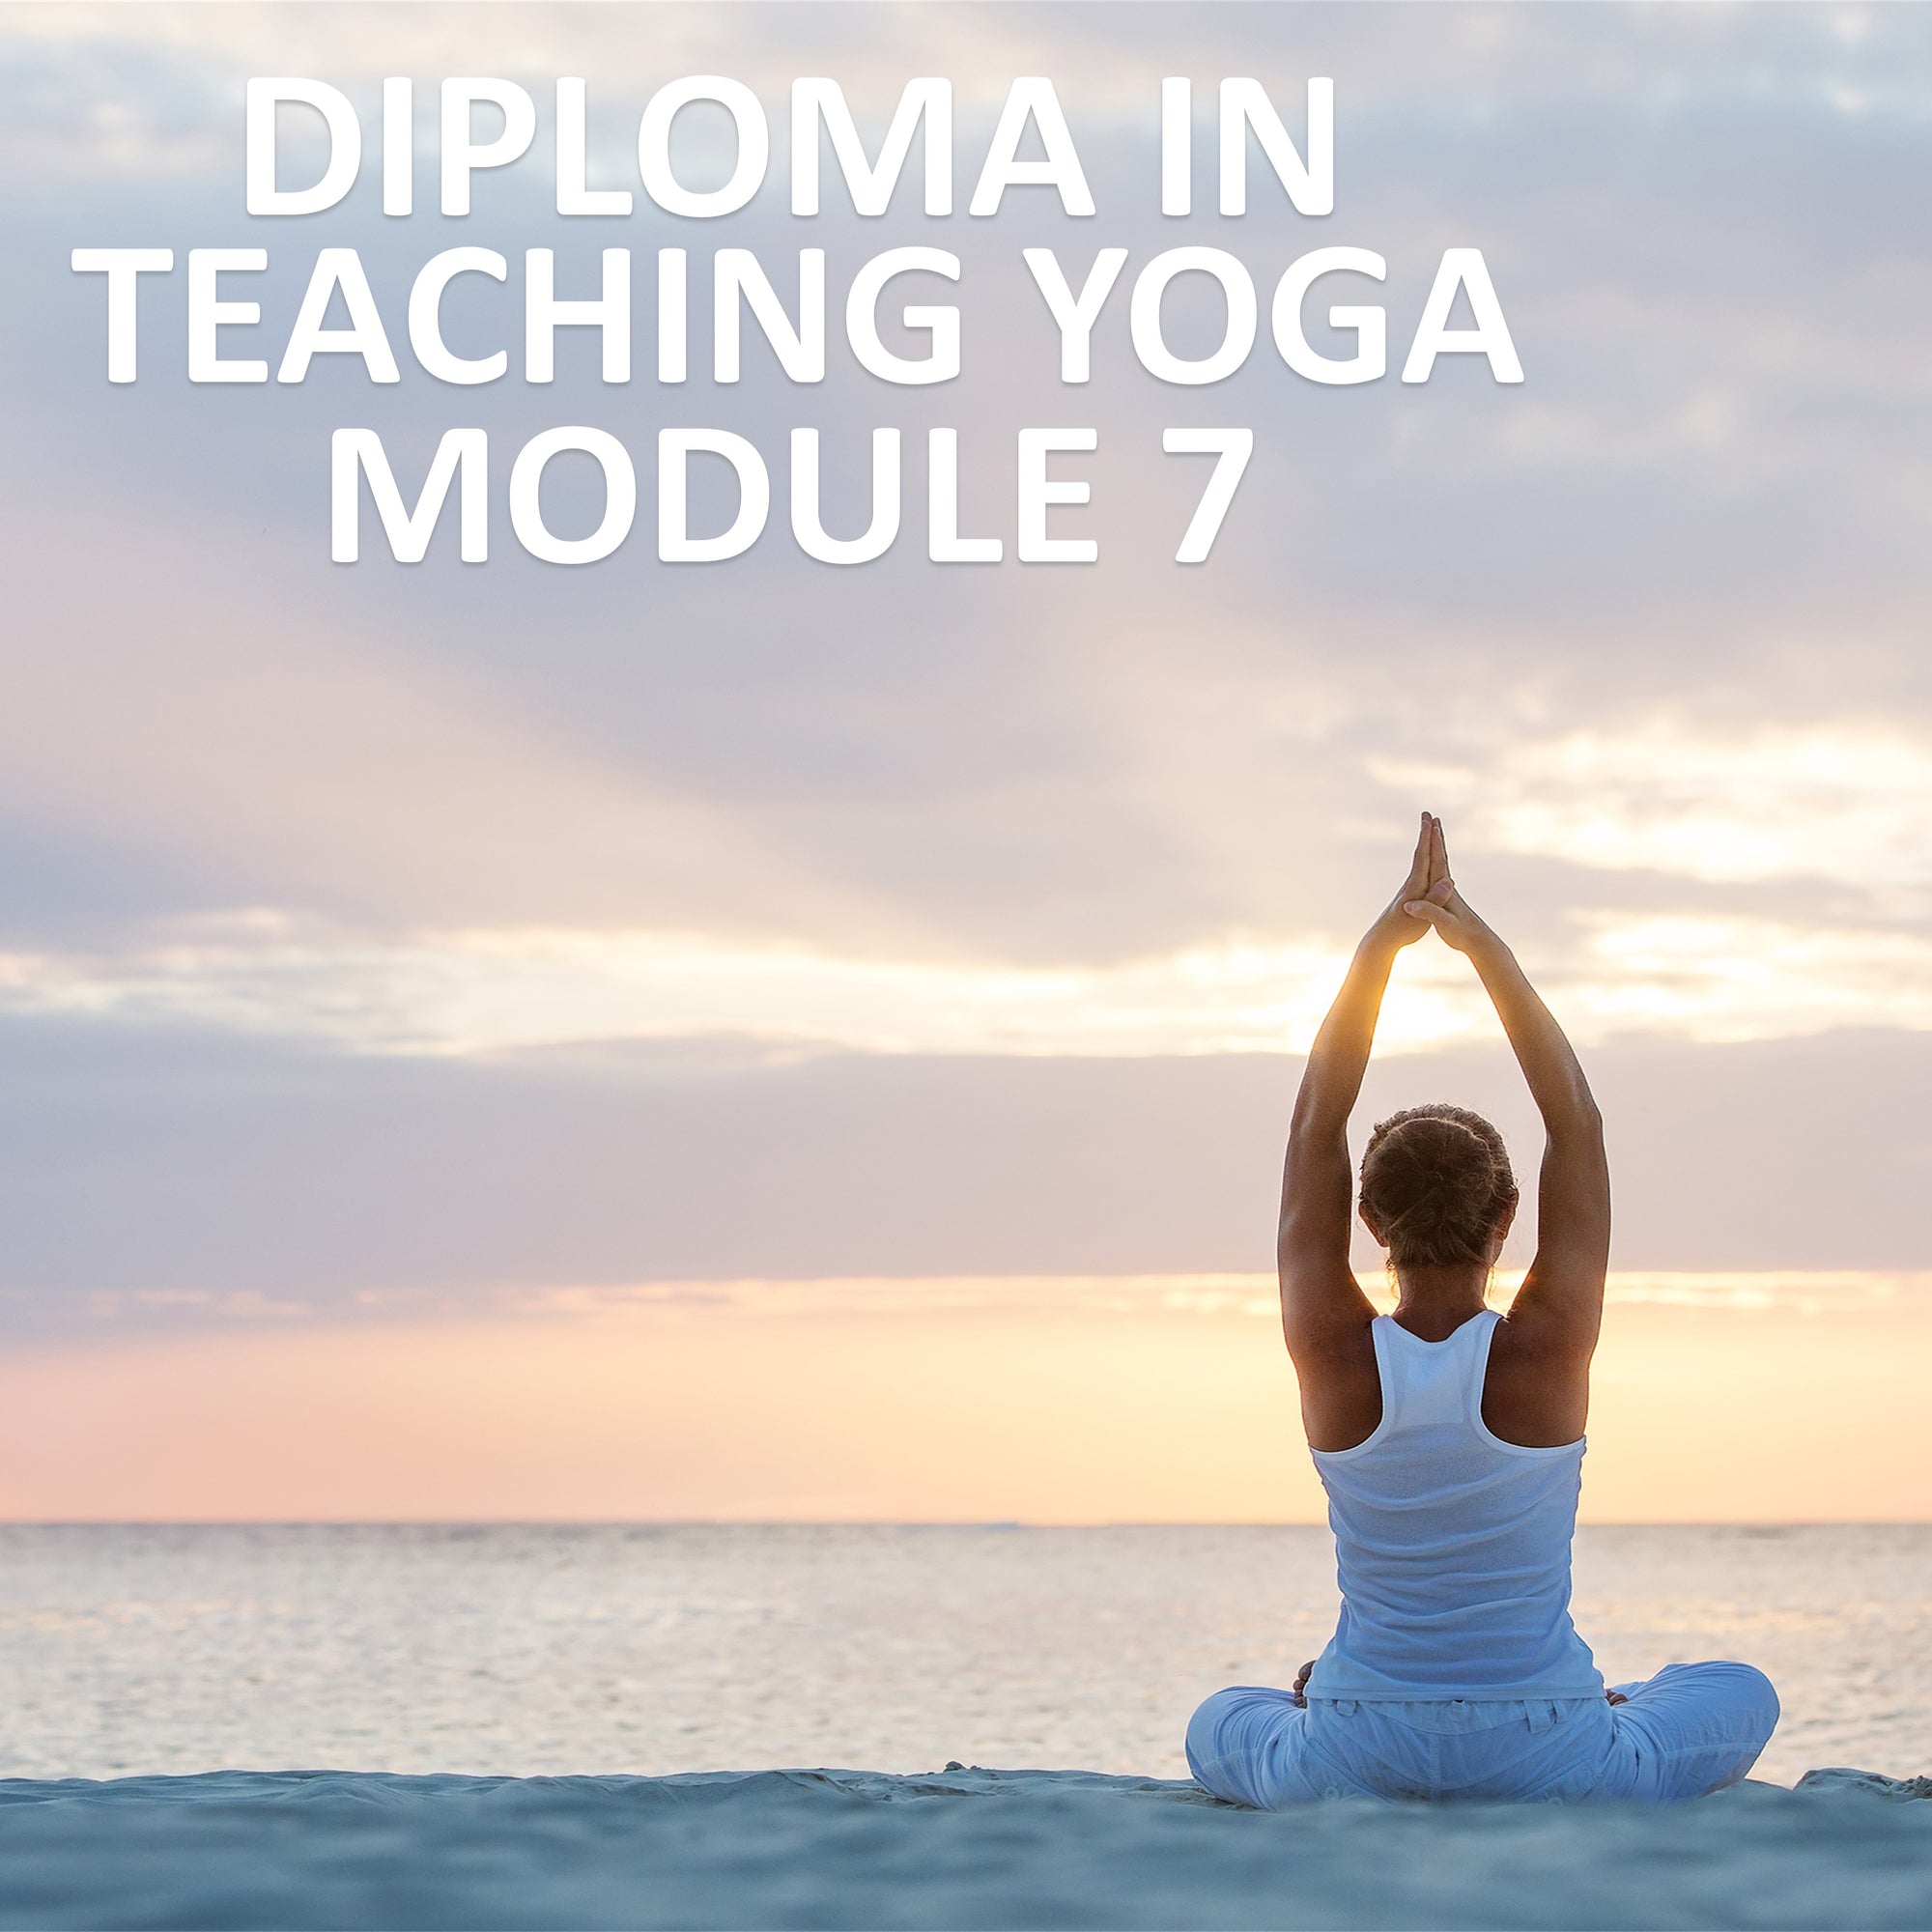 Diploma in Teaching Yoga Module 7